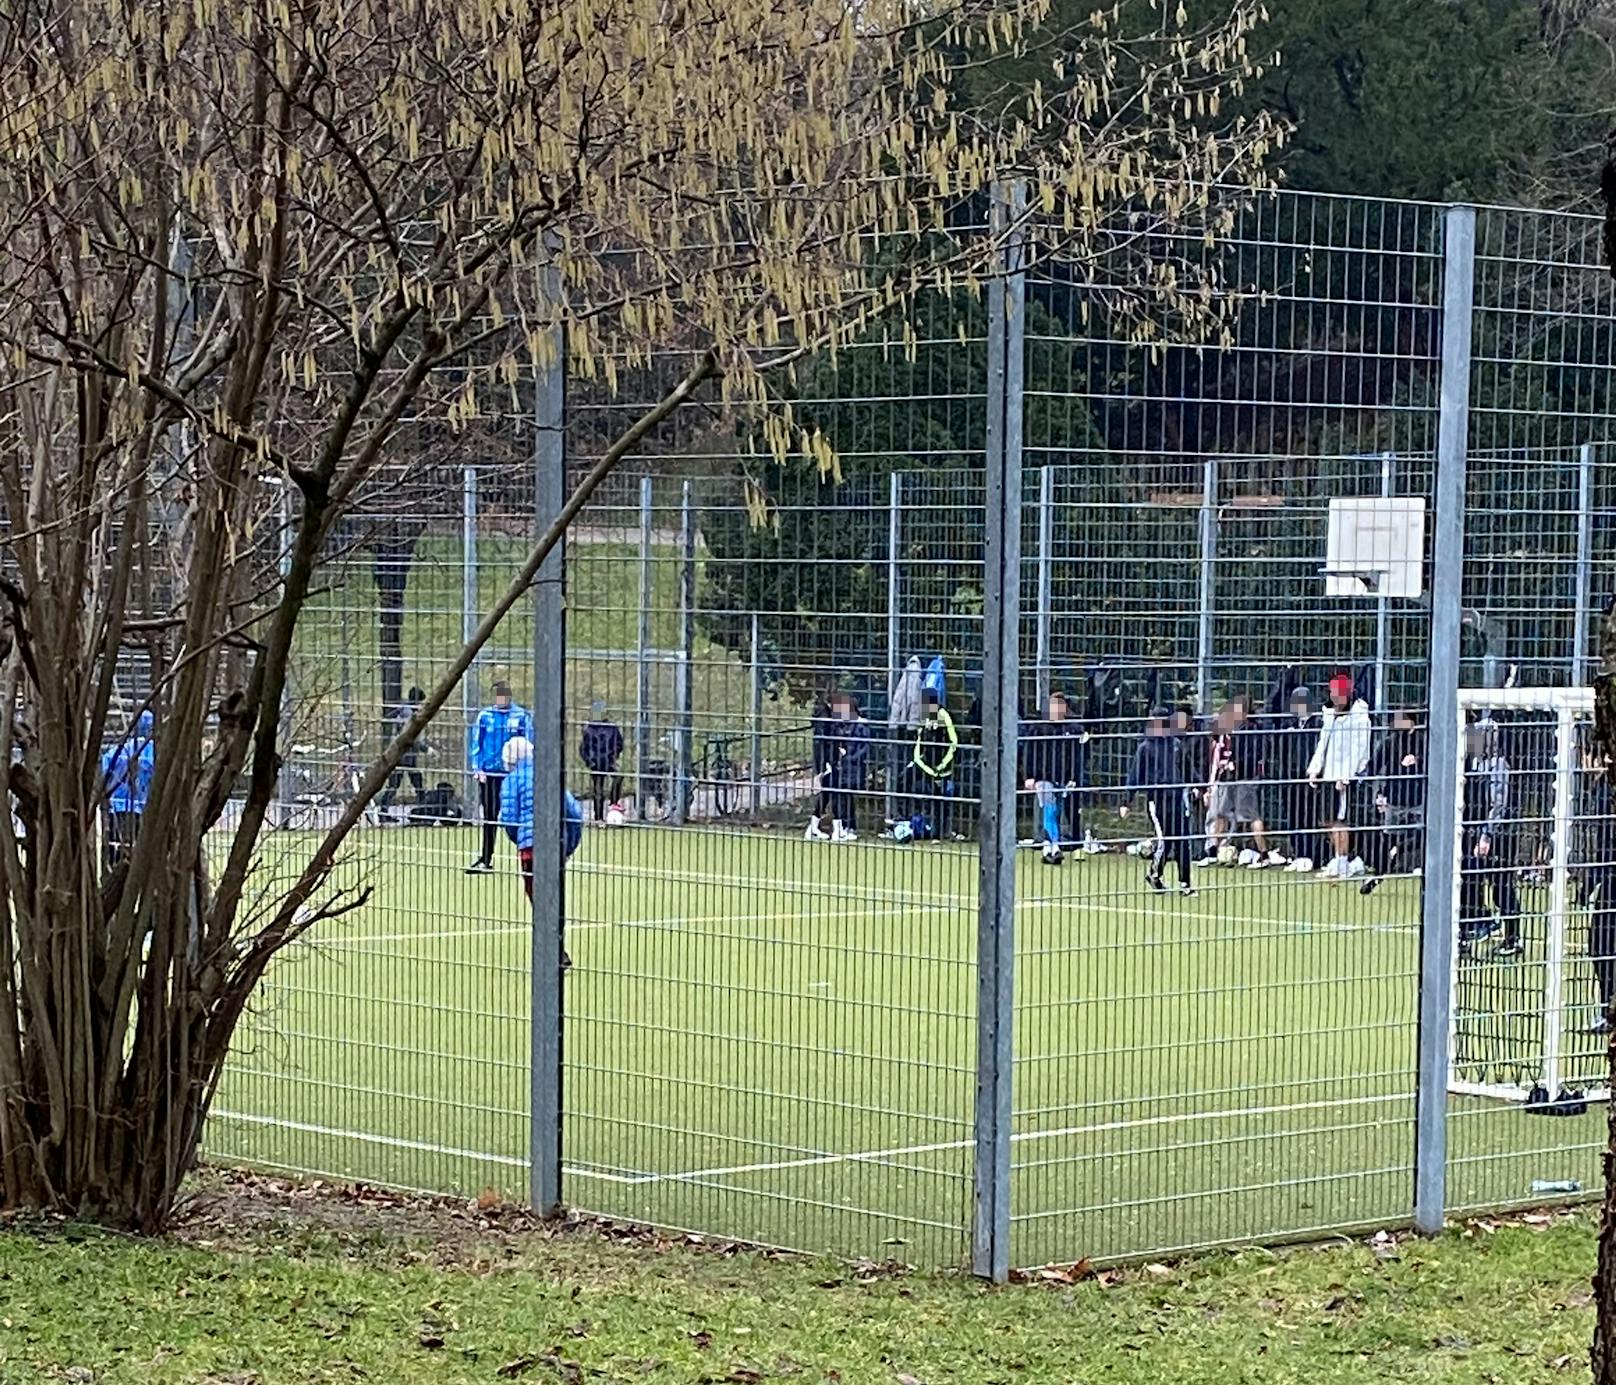 Ein Leser sah, wie die jungen Leute im Käfig Fußball spielten.